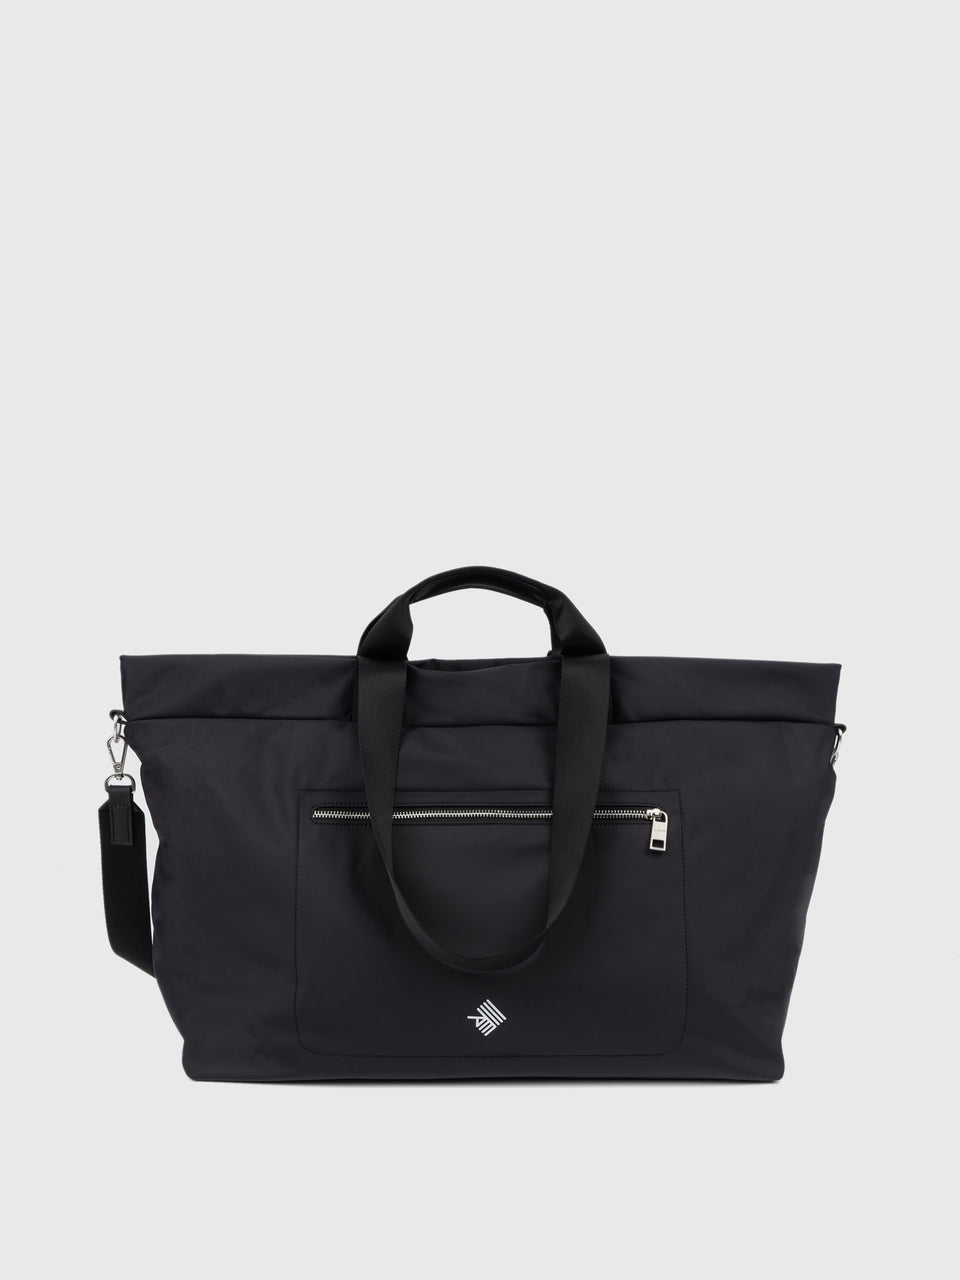 Weekender Bag - Charcoal Black